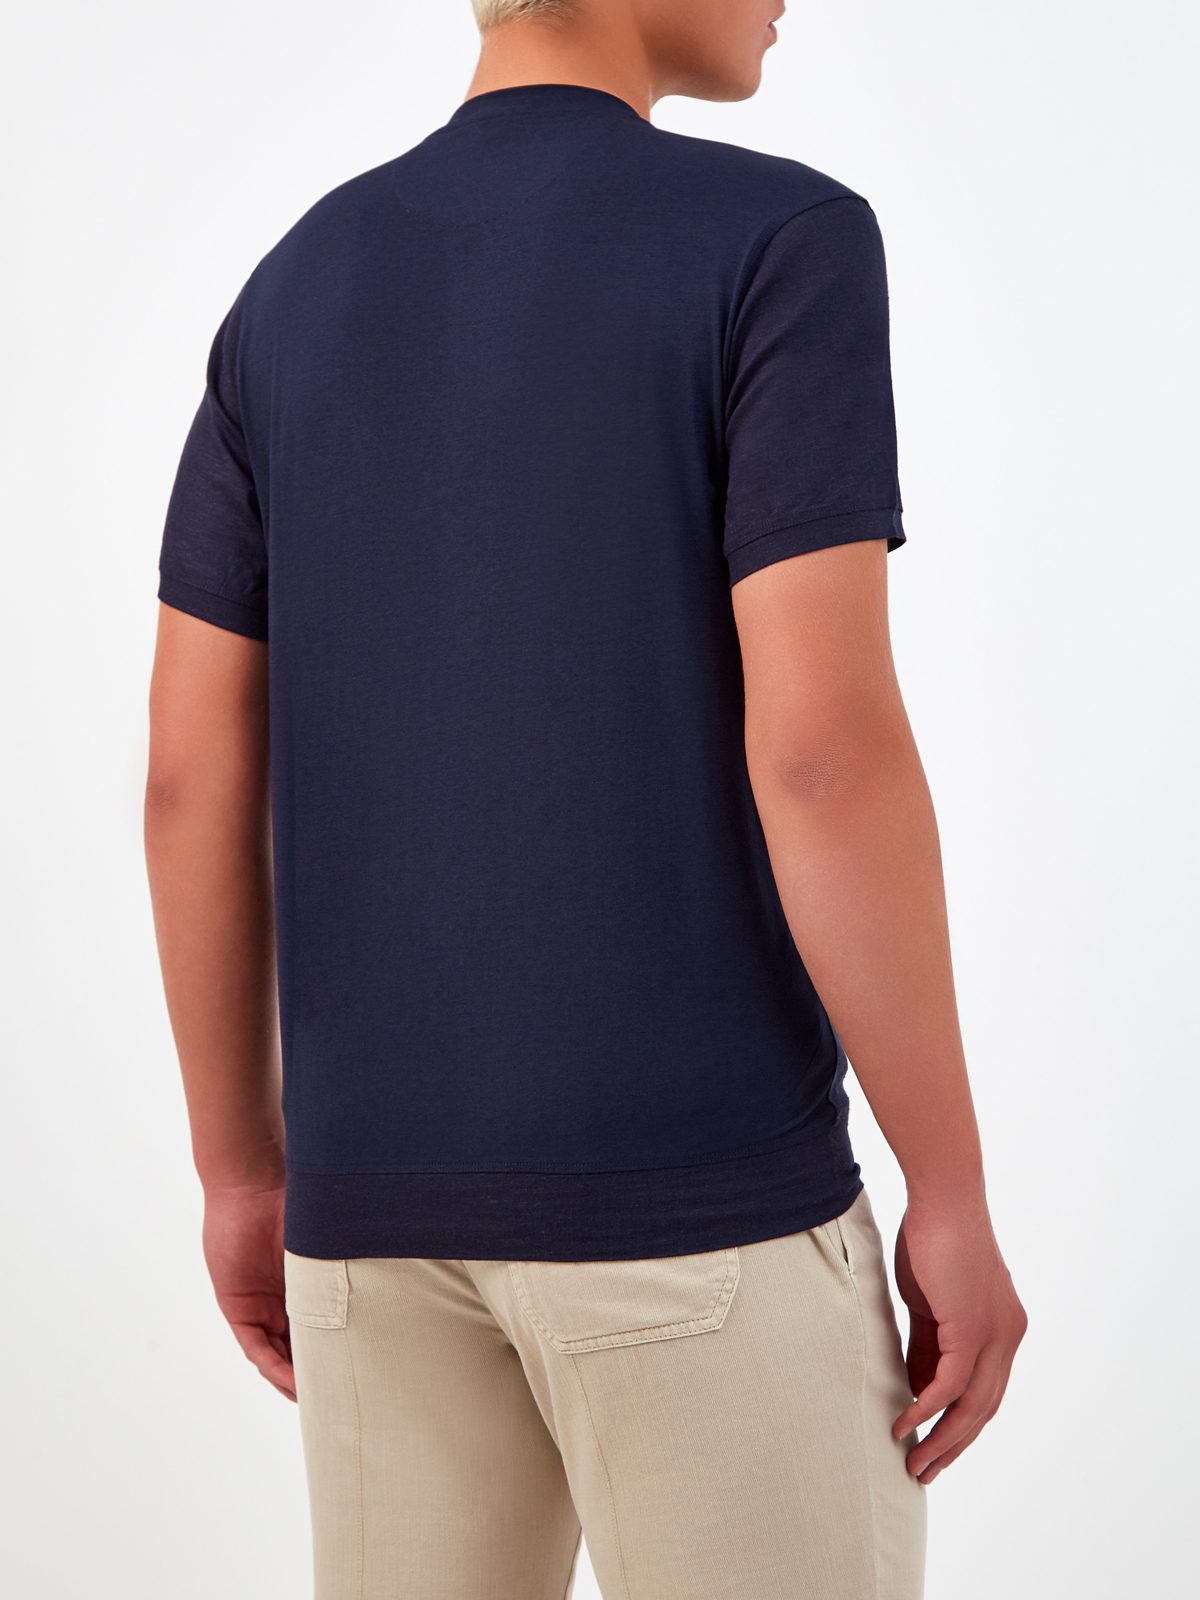 Комбинированная льняная футболка с воротом в рубчик CUDGI, цвет синий, размер 50;52;54;56;48 - фото 4